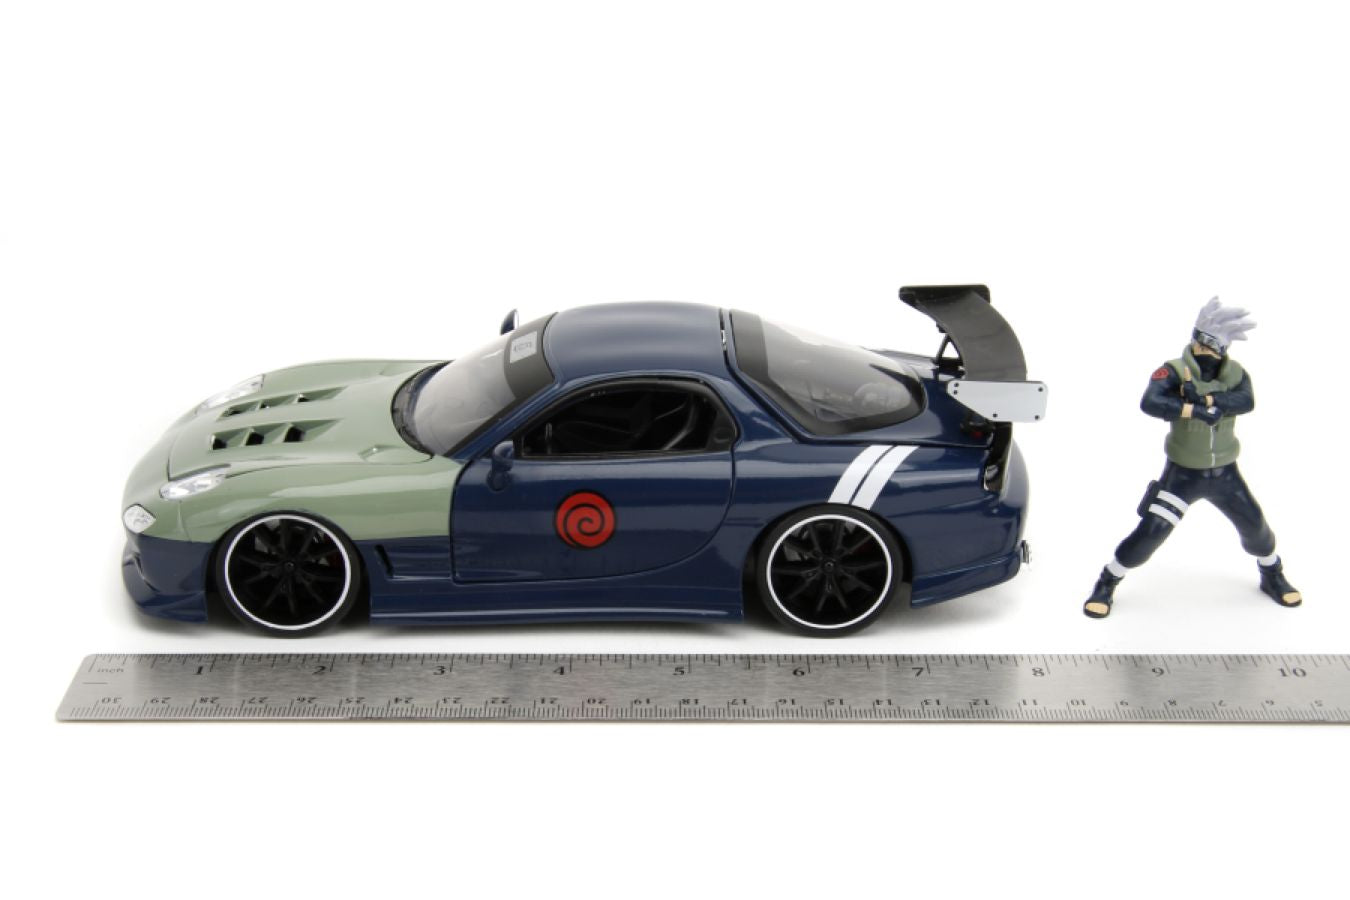 Naruto - Mazda RX-7 With Kakashi Figure 1:24 Scale Vehicle